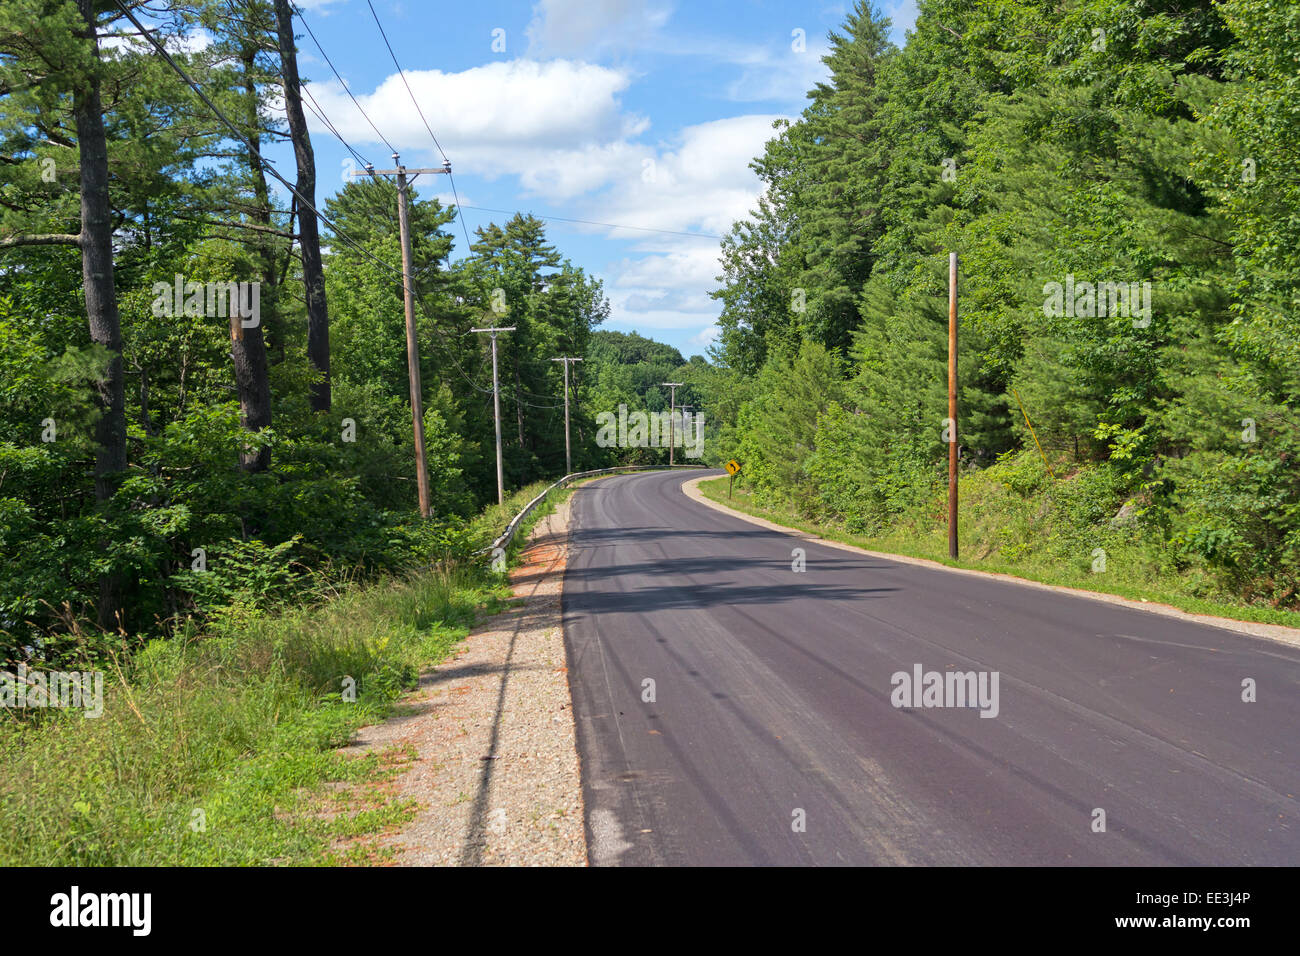 Un rurale paese Maine Road nel periodo estivo con alberi e cespugli e un nuvoloso cielo blu nella distanza. Foto Stock